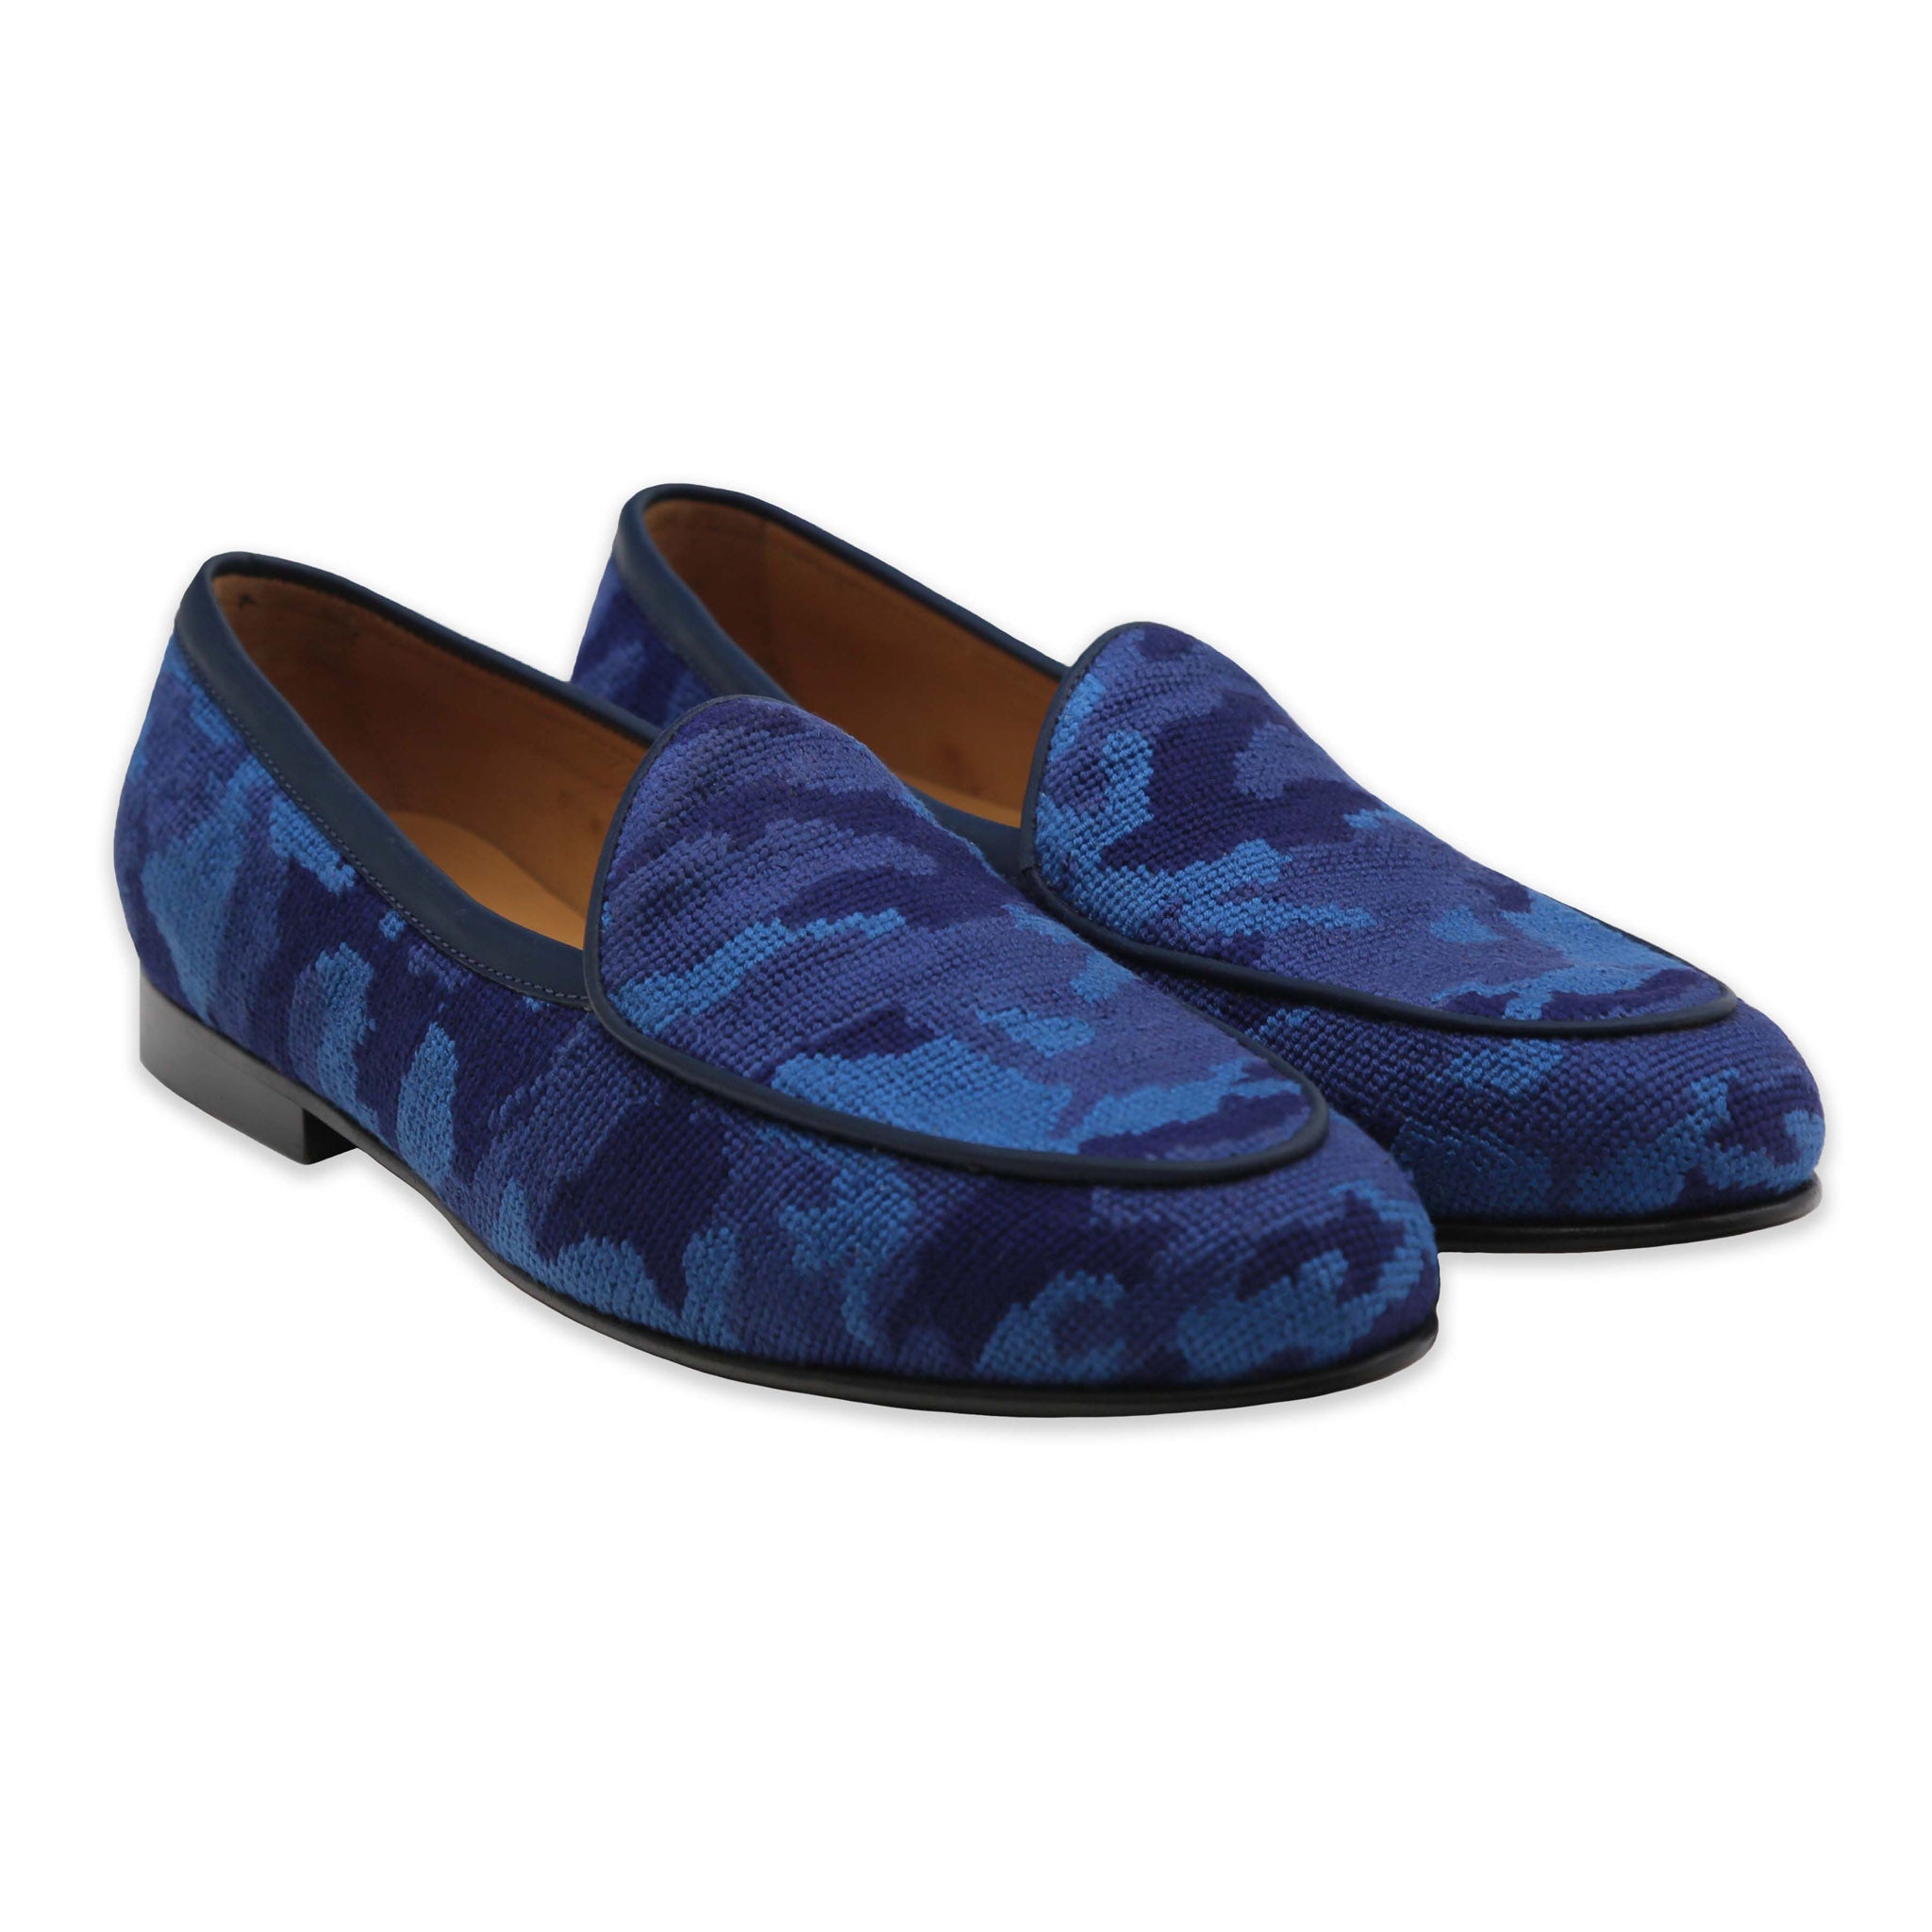 louis blue dress shoes